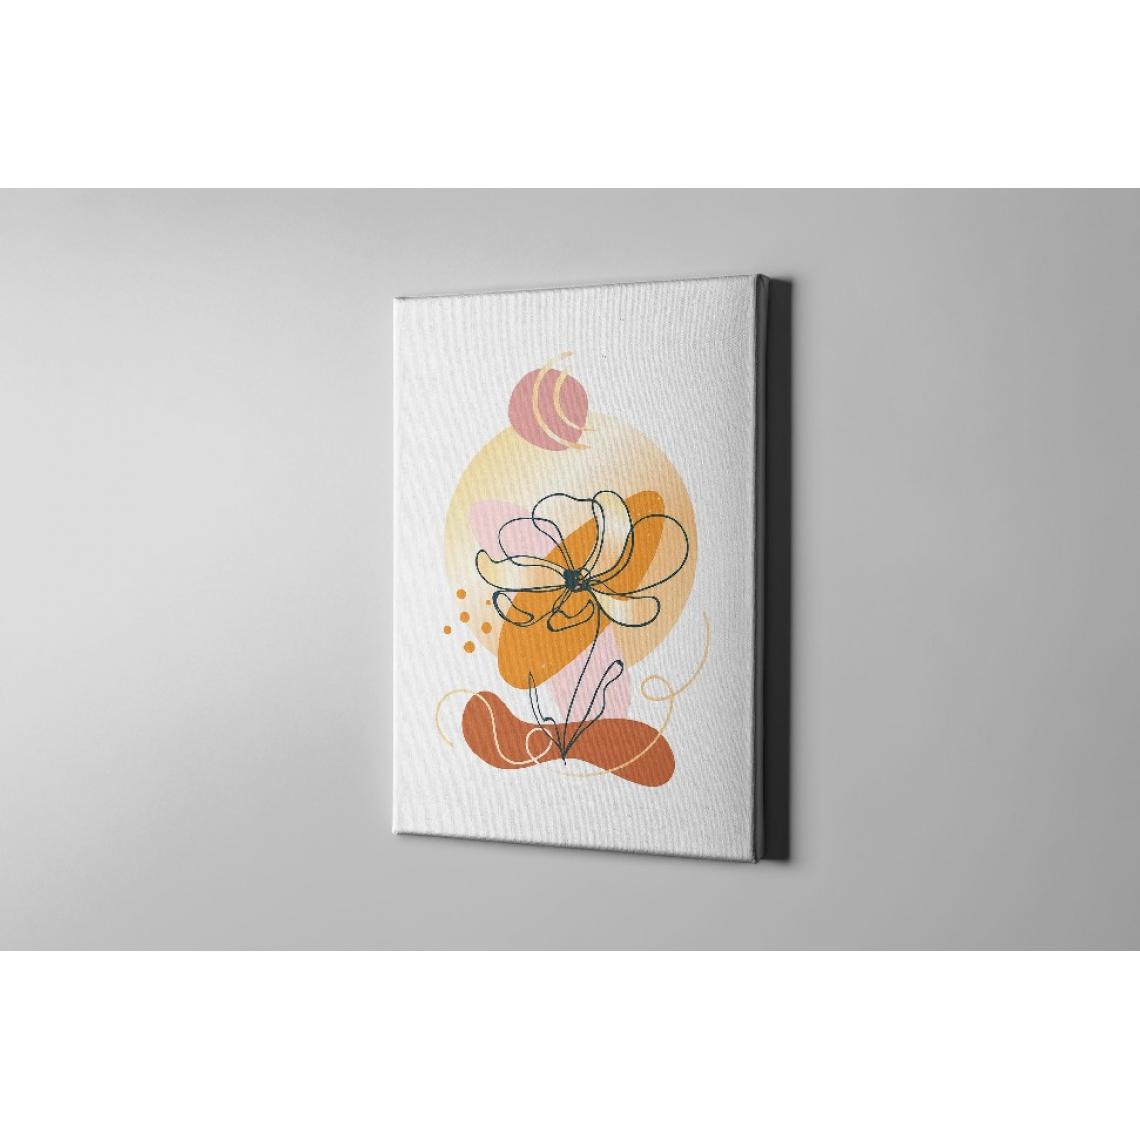 Homemania - HOMEMANIA Tableau sur toile Fleur - Blanc, orange, rose - 100 x 3 x 150 cm - Tableaux, peintures